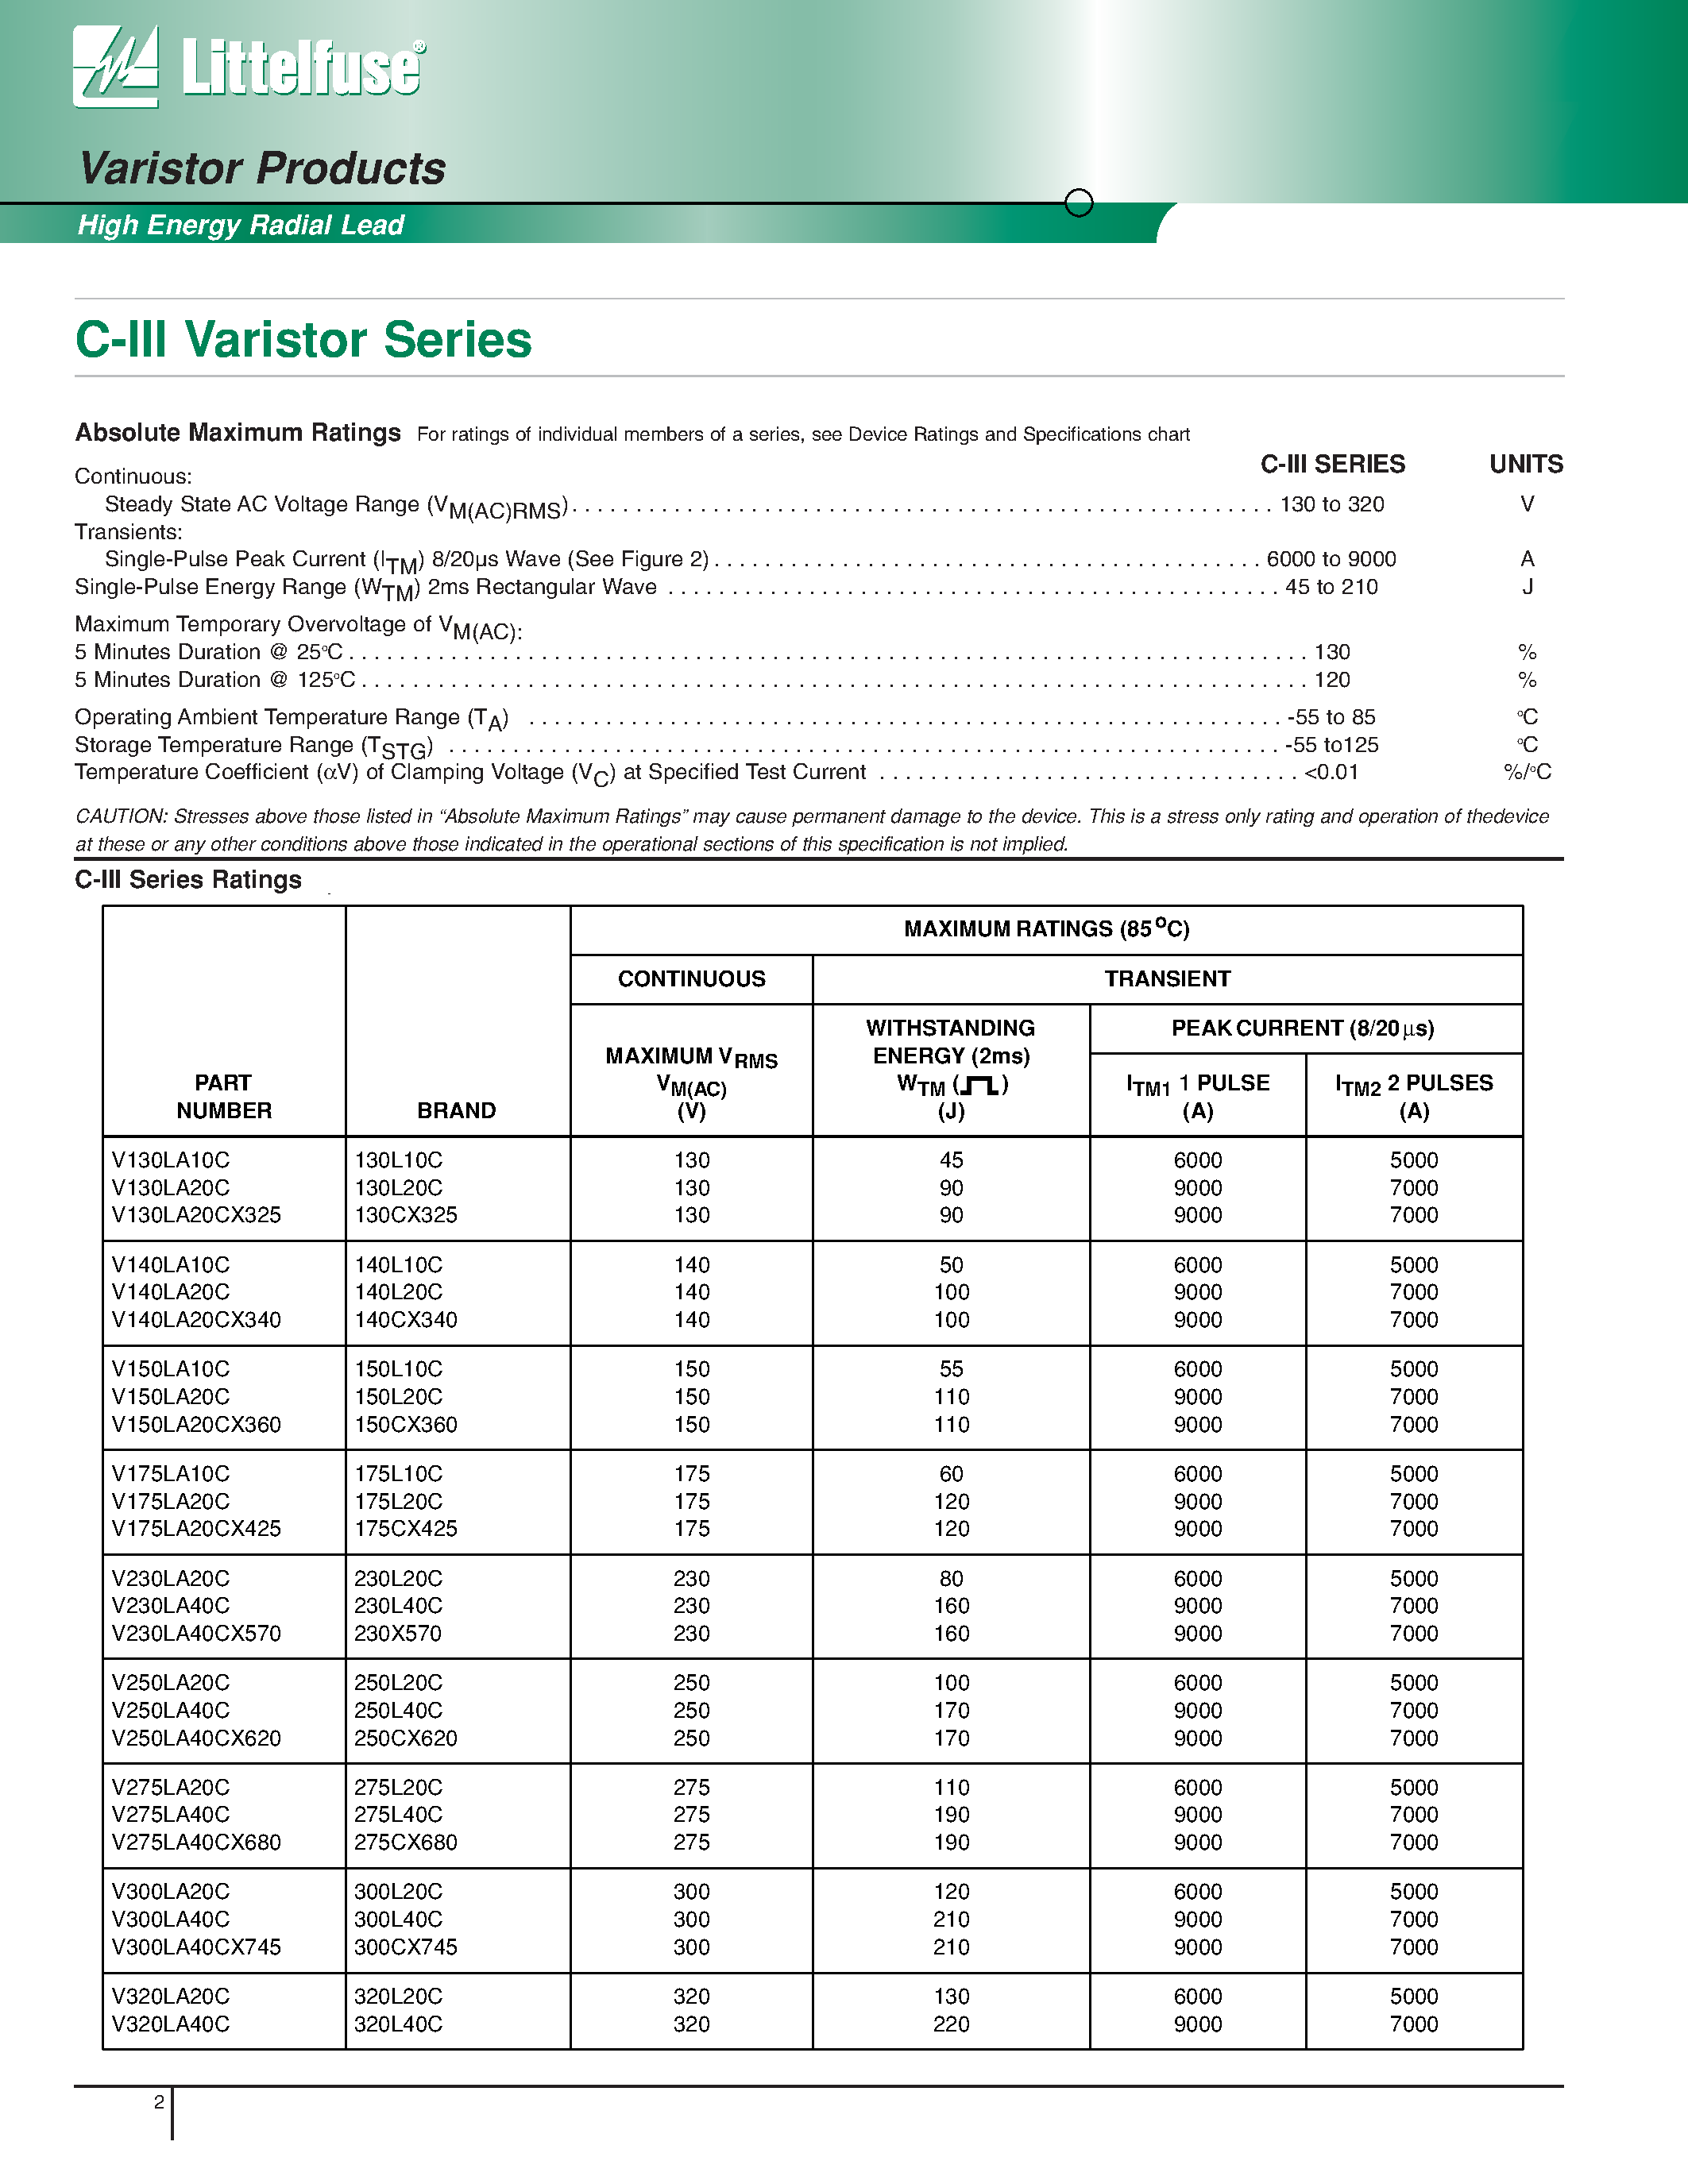 Даташит V320LA20C - C-III Varistor Series страница 2